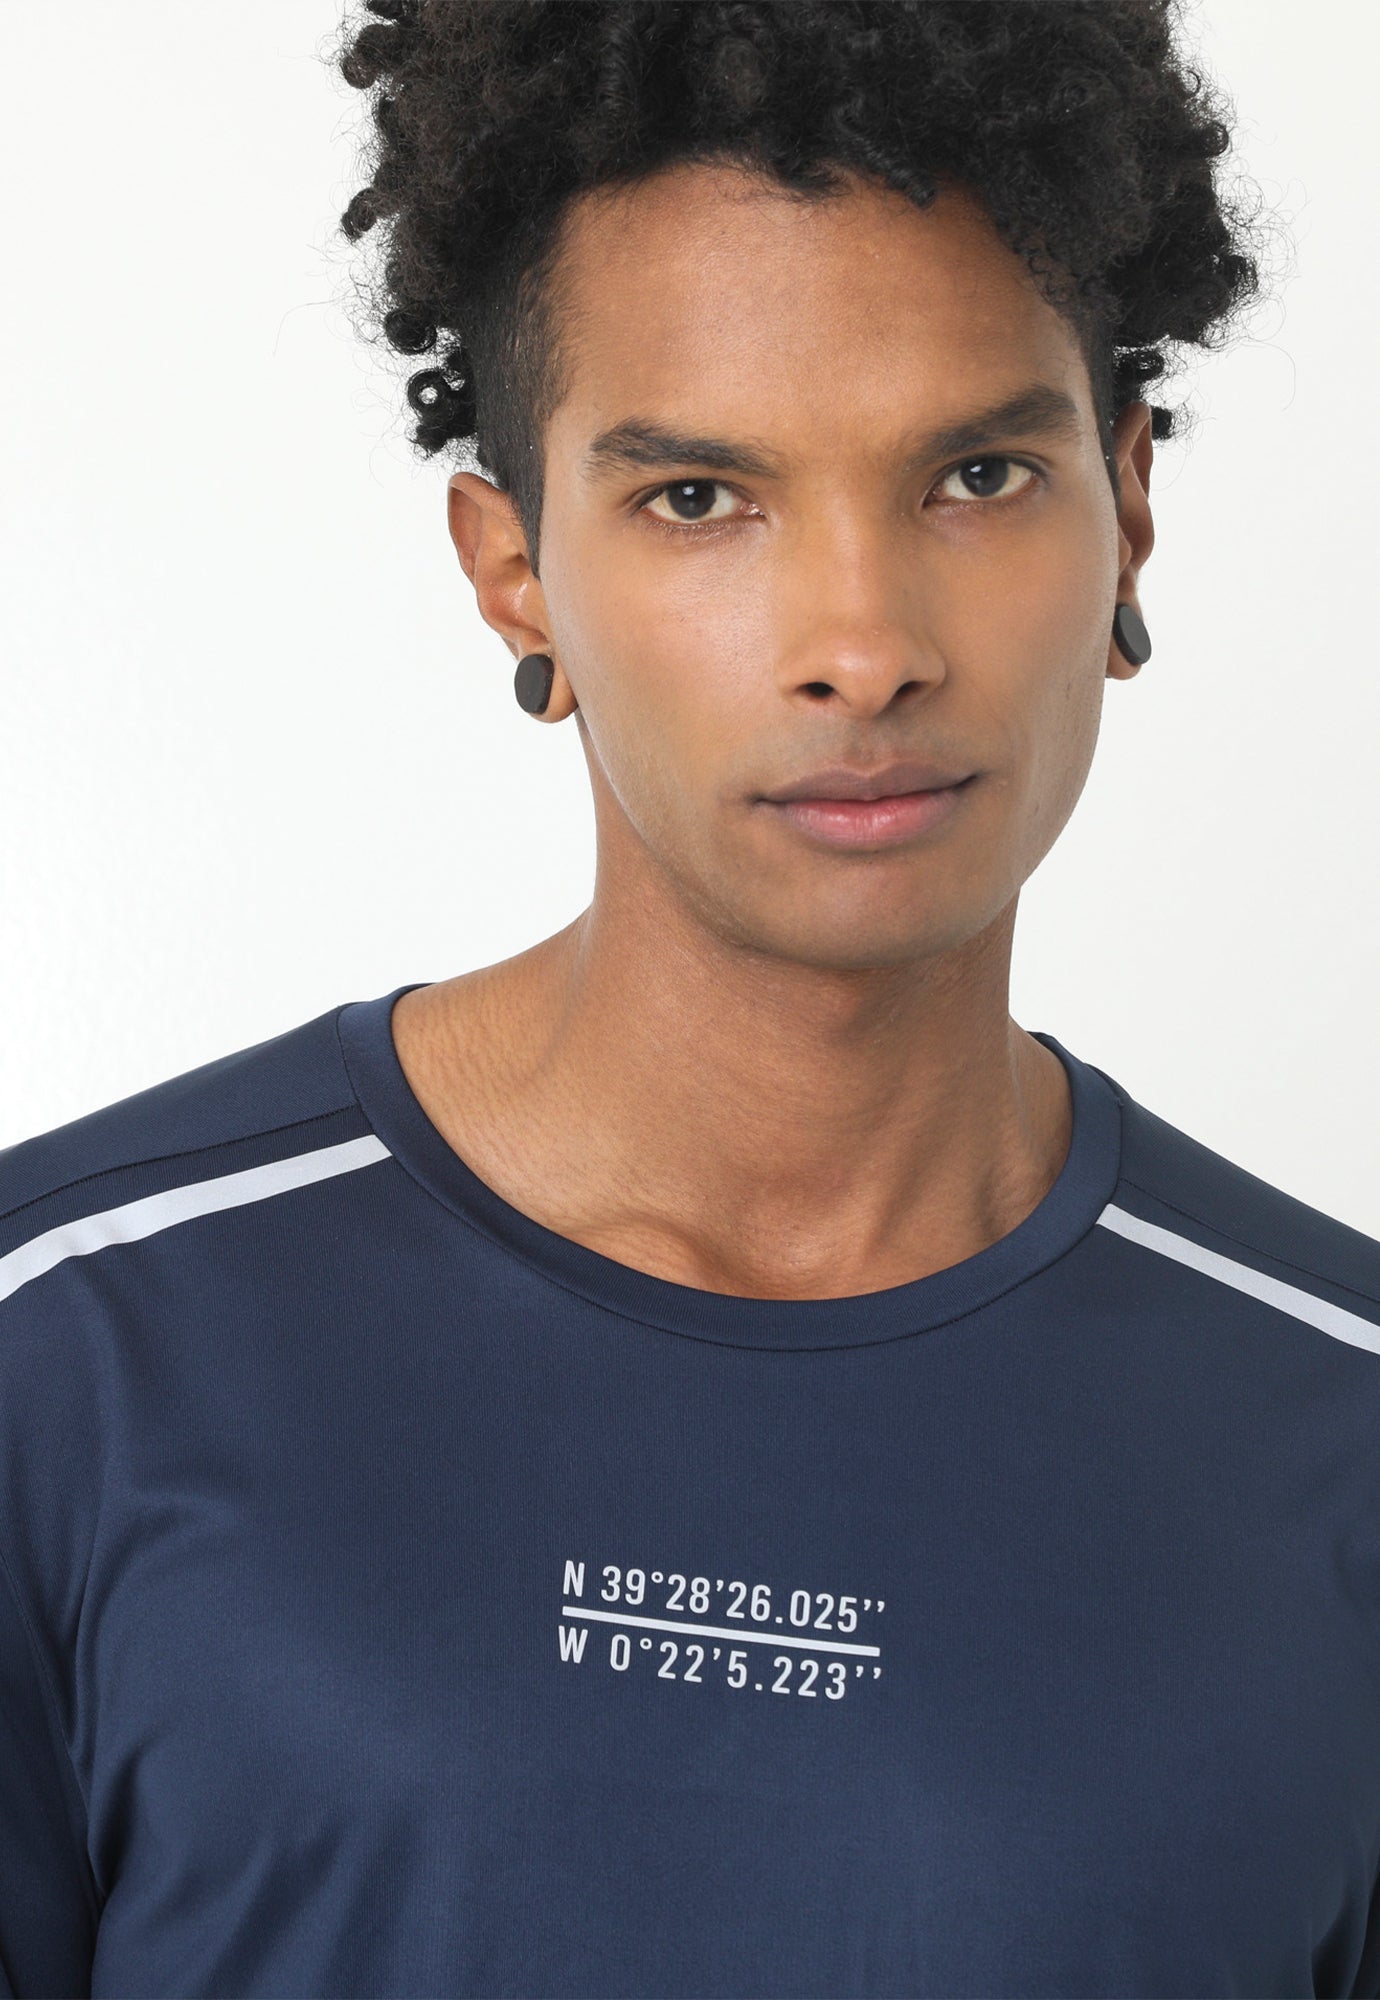 Camiseta deportiva azul oscuro, silueta ajustada, manga larga con detalles reflectivos en hombro para hombre